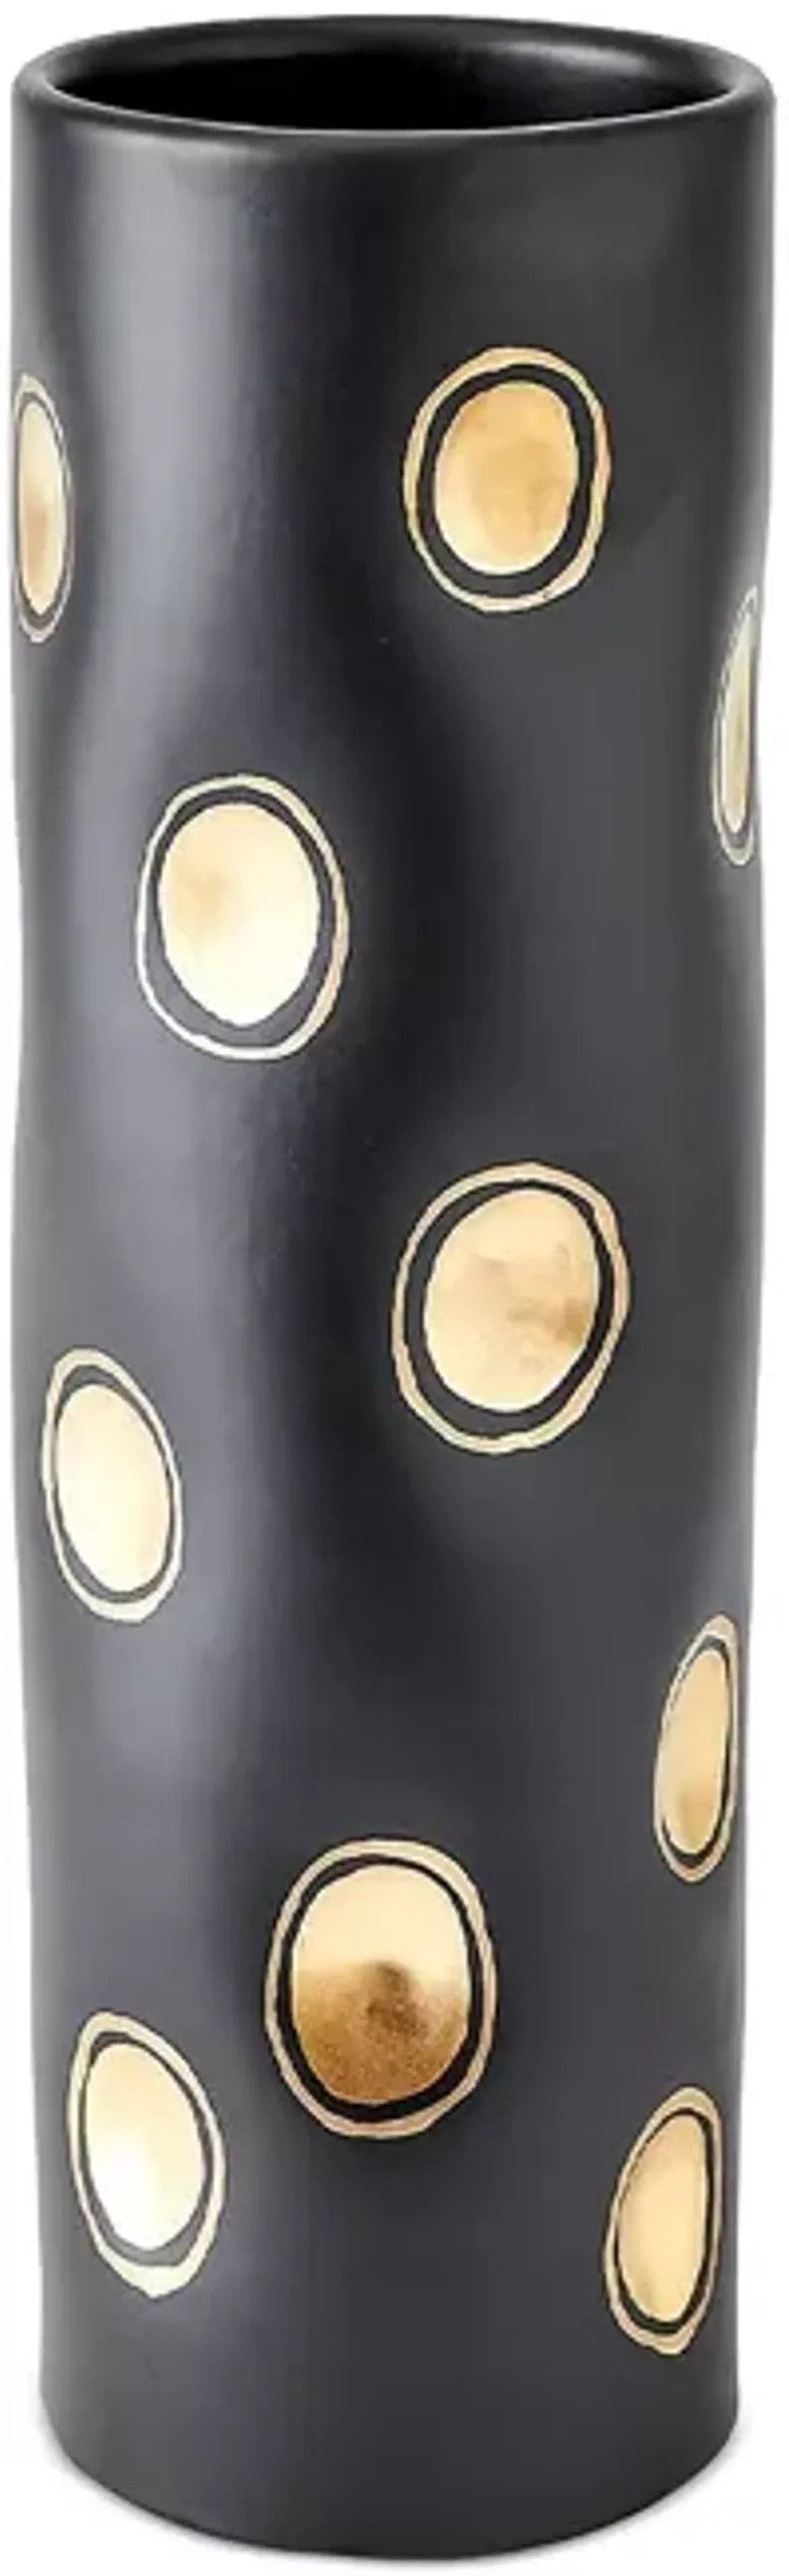 Global Views Dimples Vase in Black, Cylinder